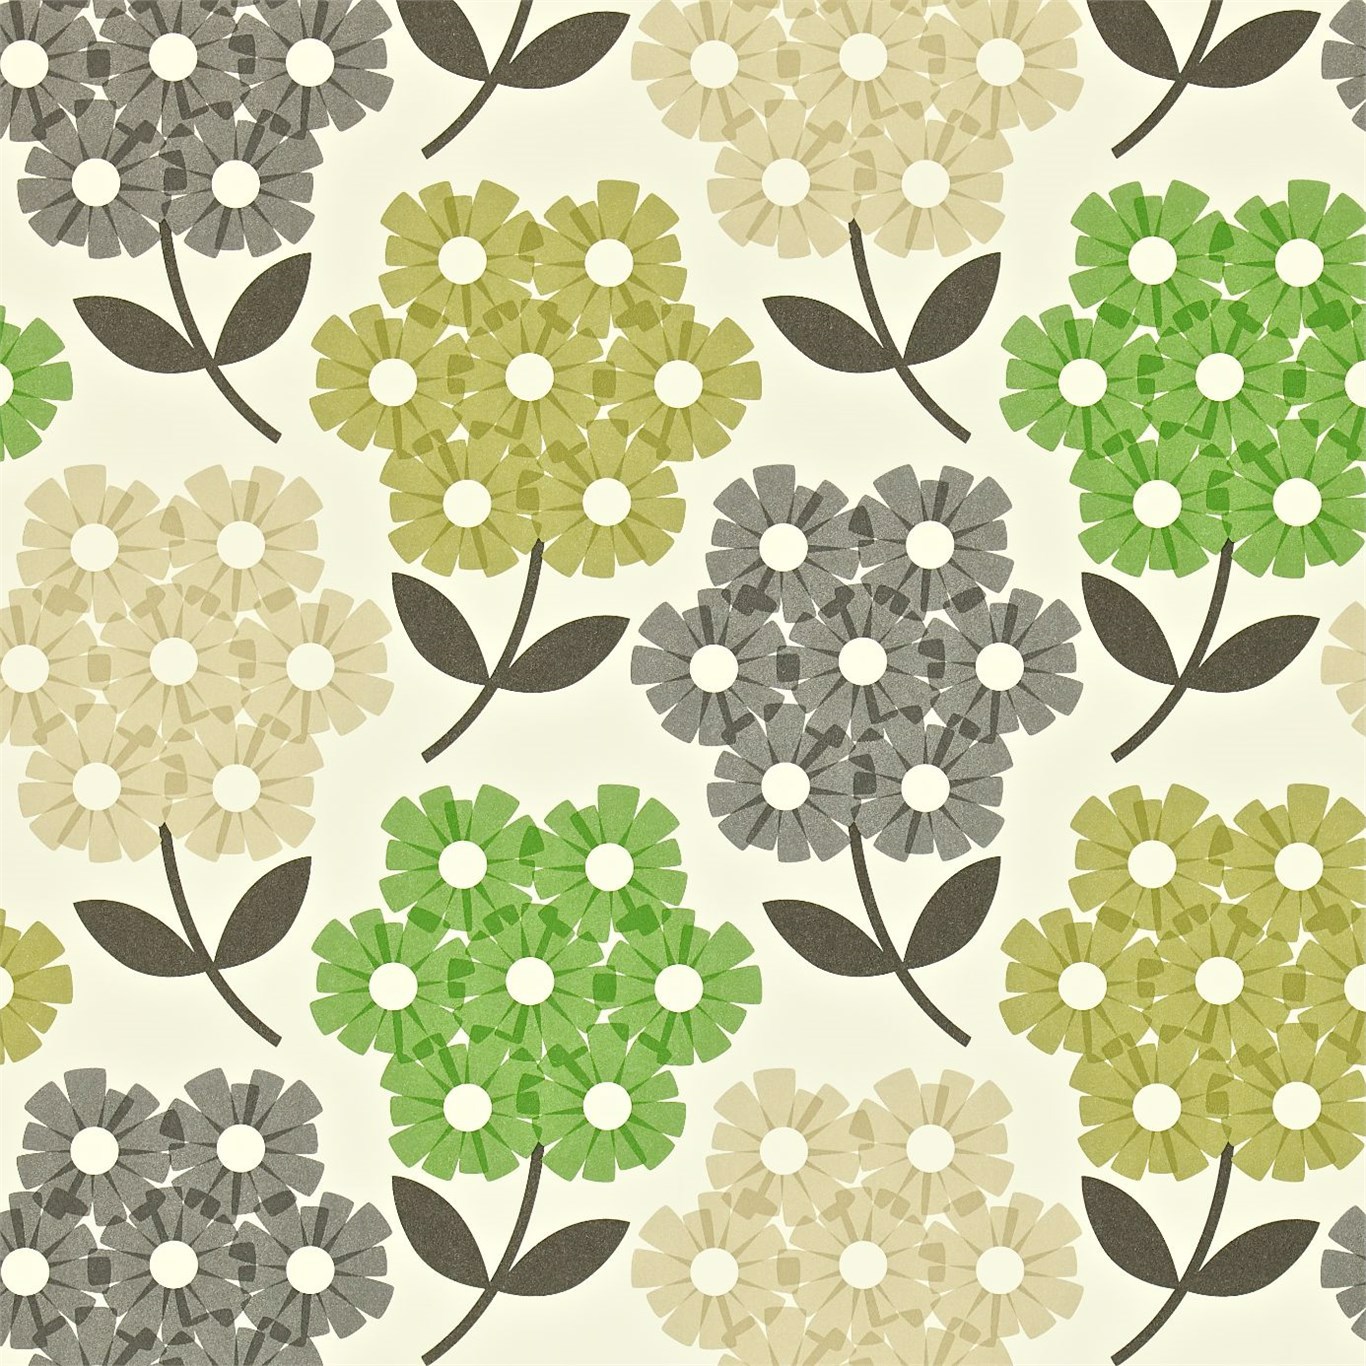 Rhodedendron Nettle Wallpaper by HAR